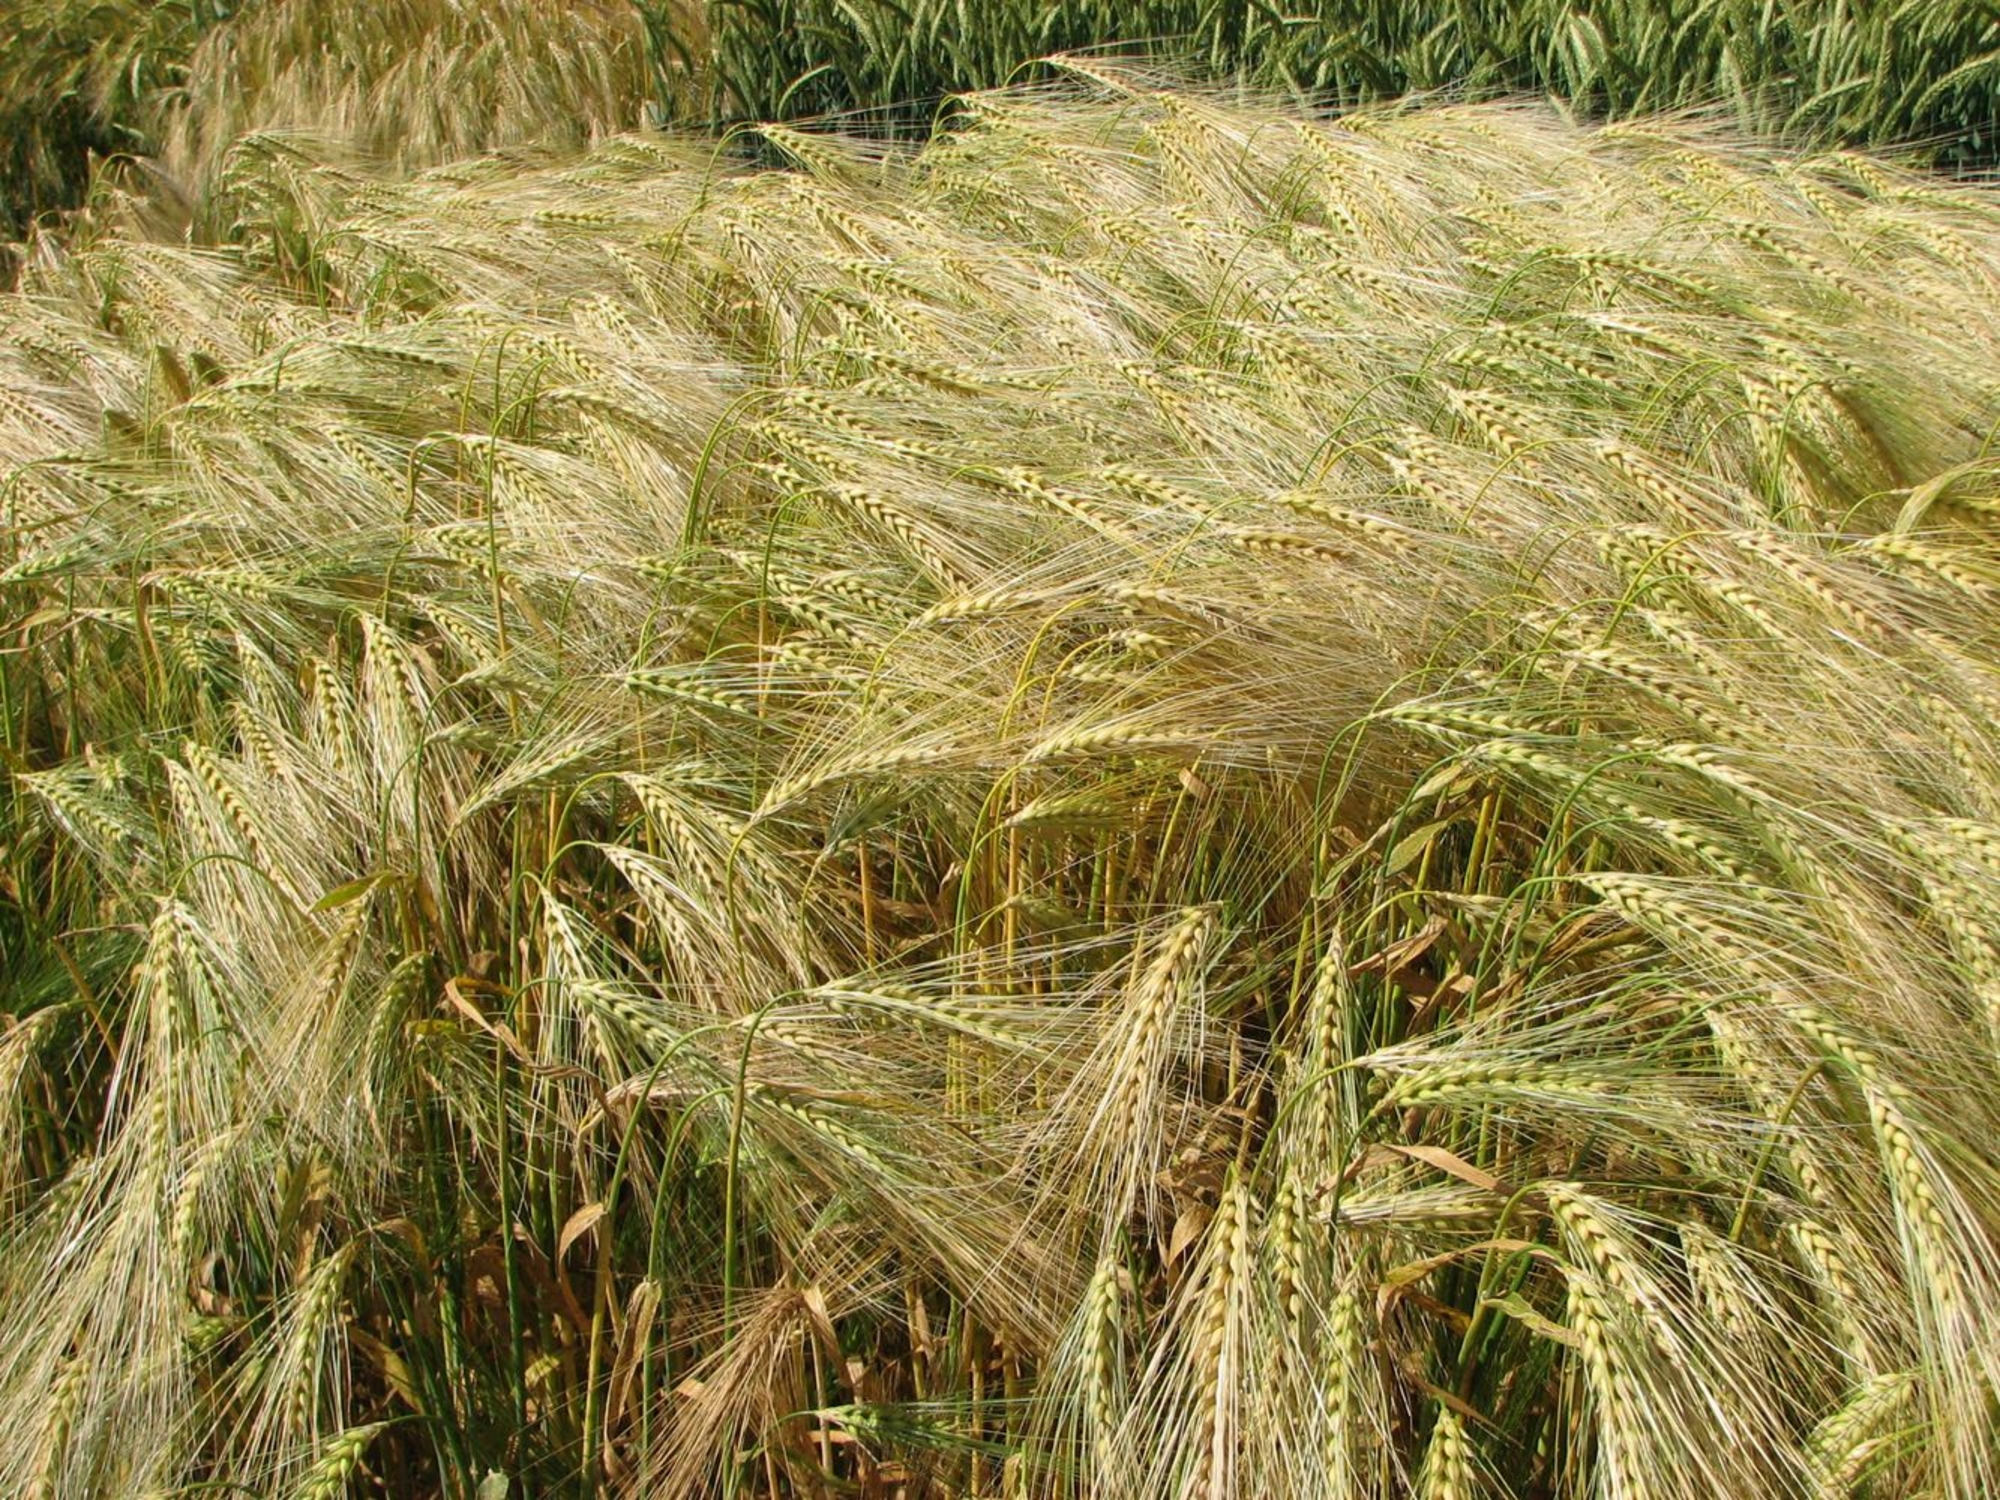 Détail d'un champ de blé